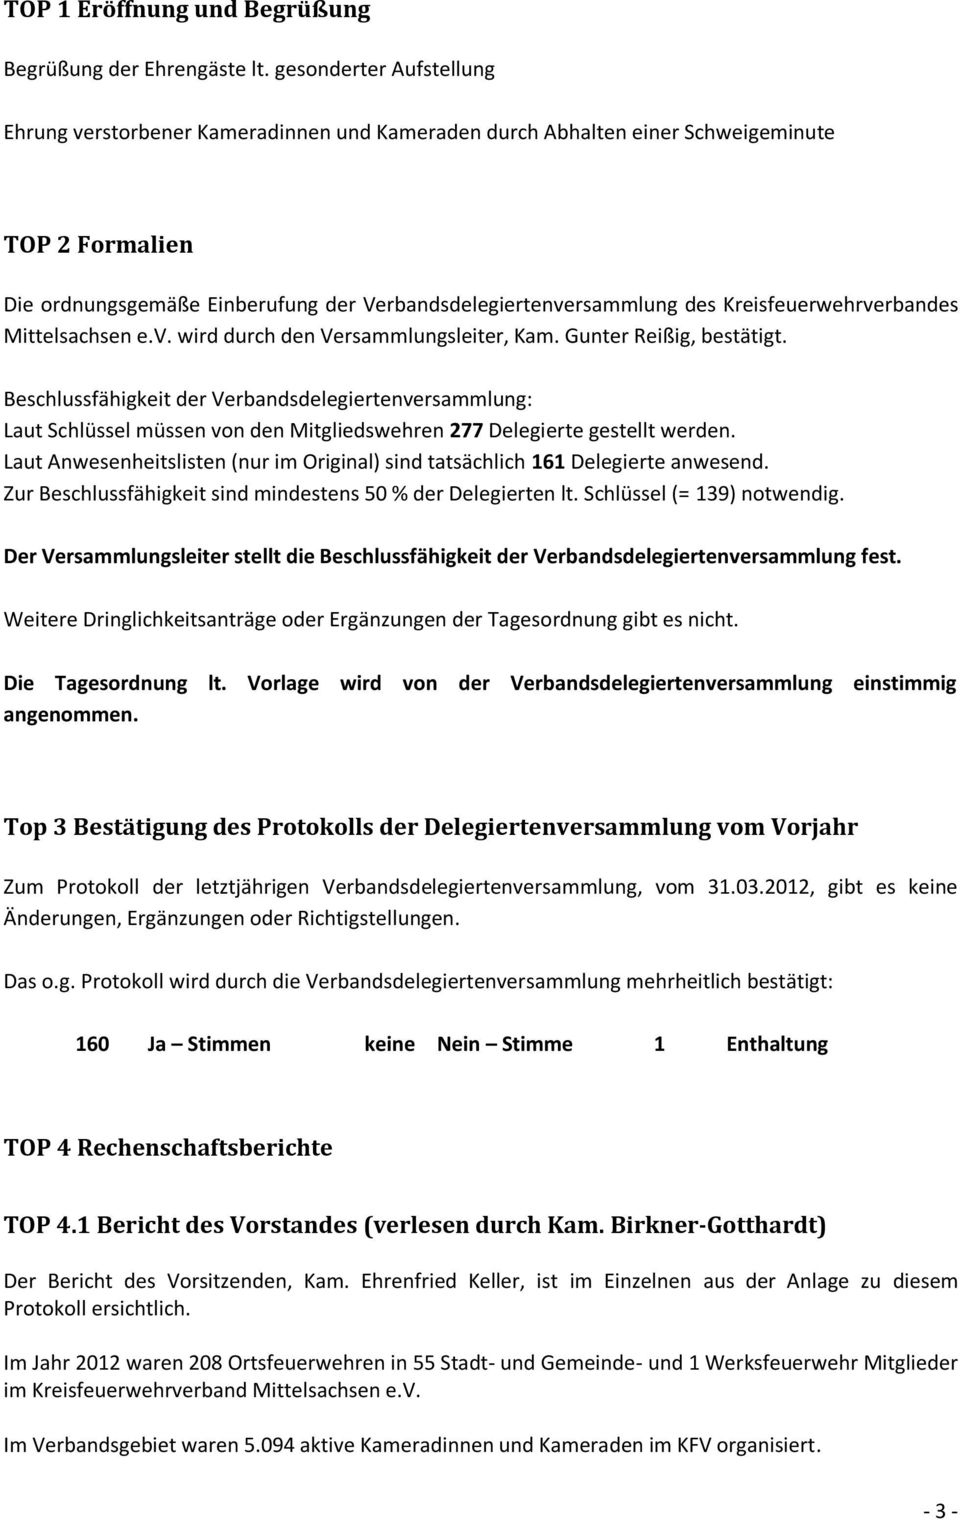 Kreisfeuerwehrverbandes Mittelsachsen e.v. wird durch den Versammlungsleiter, Kam. Gunter Reißig, bestätigt.